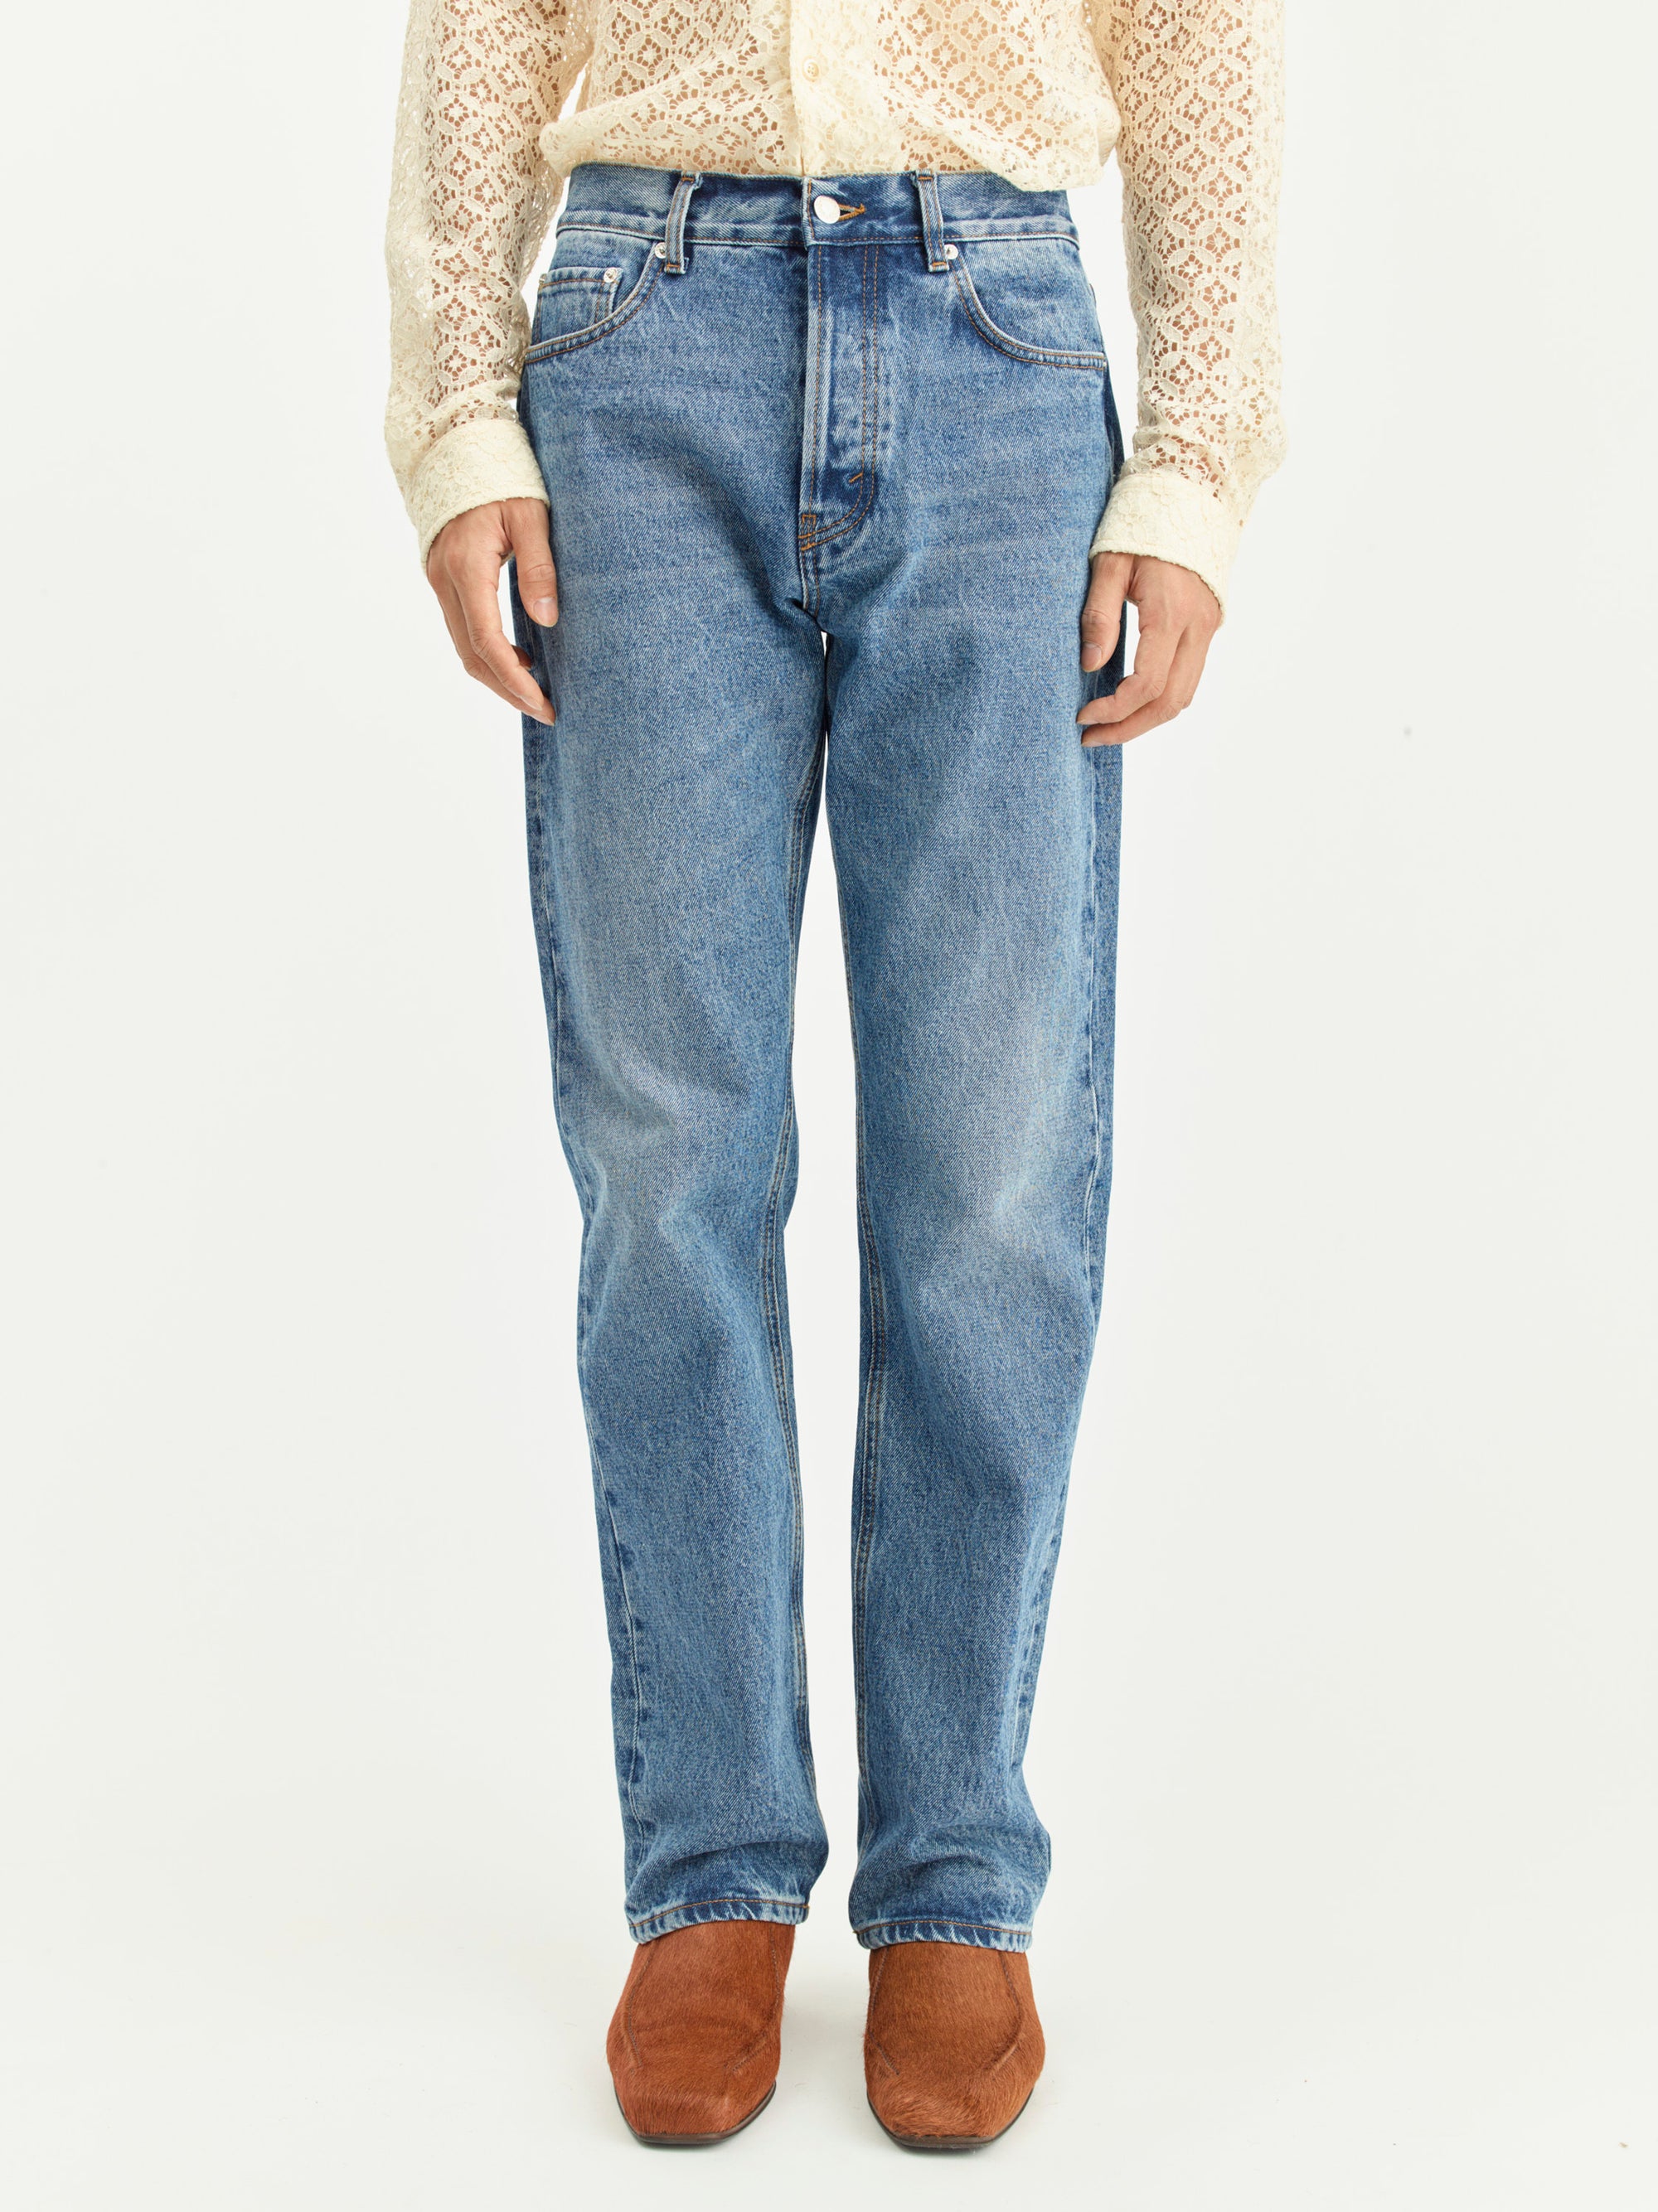 SEFR Straight Cut Jeans | Worn Wash LEO BOUTIQUE